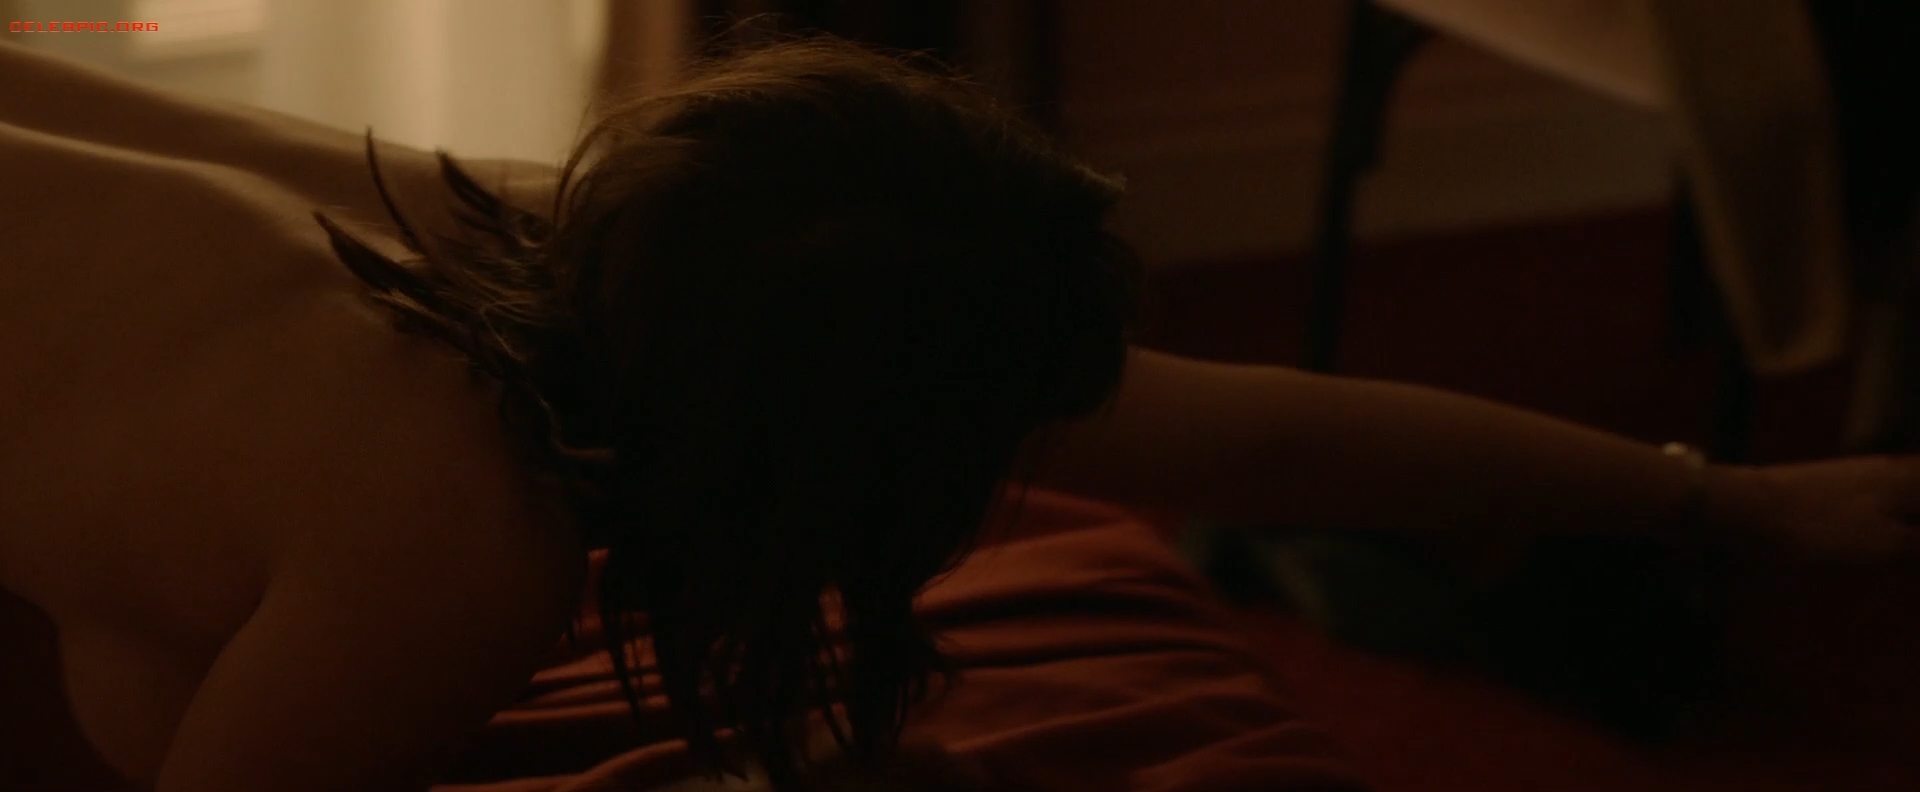 Gemma Arterton - The Escape 1080p (1) 1593.jpg